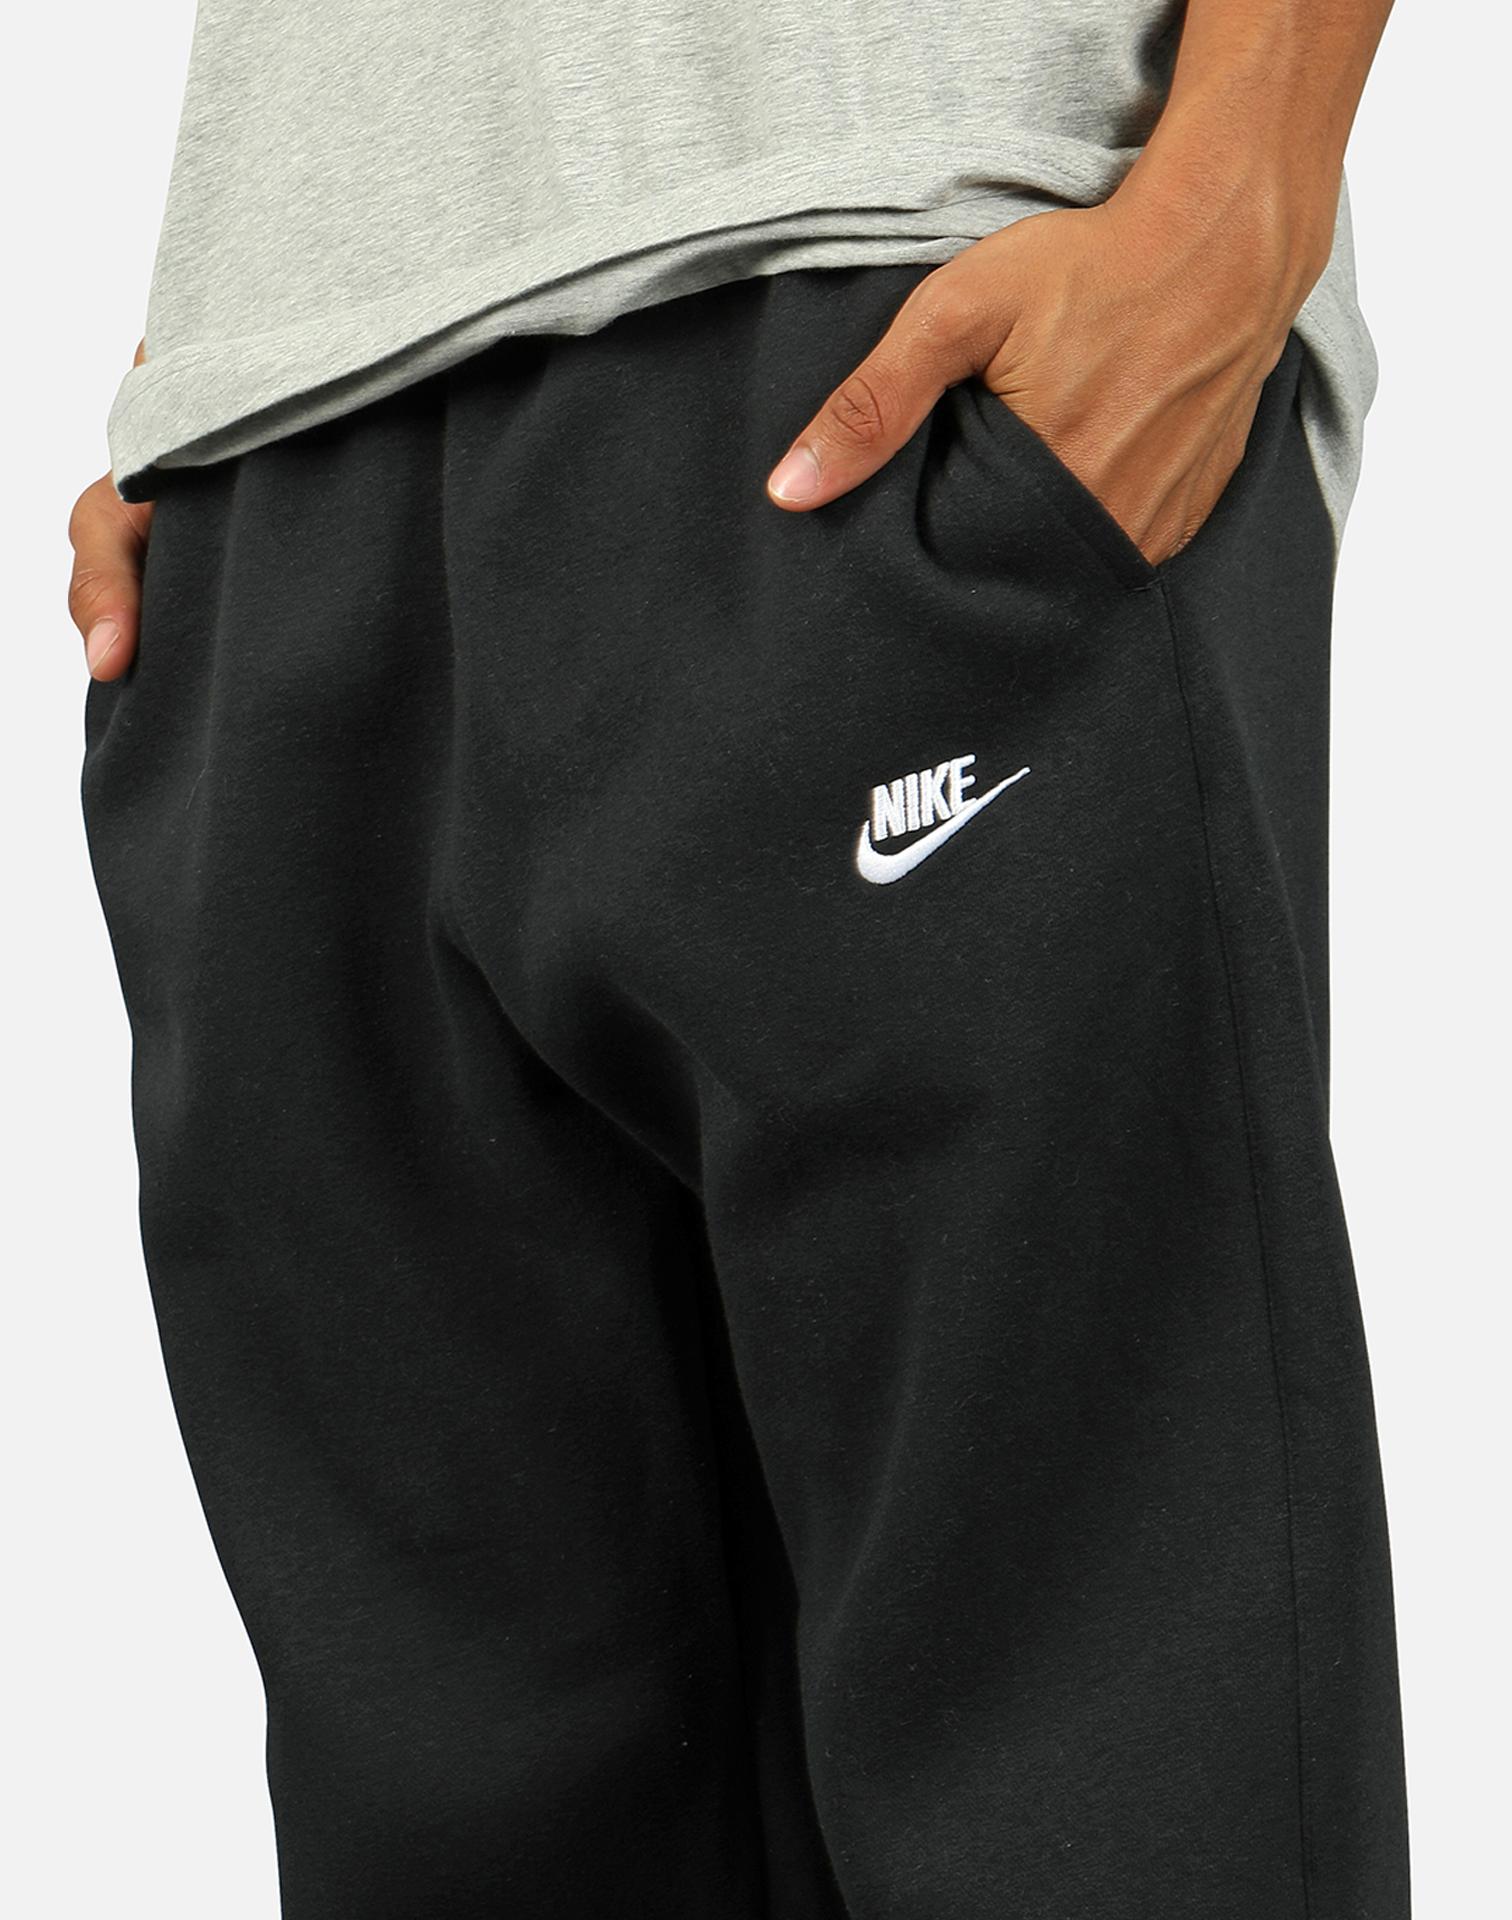 Nike Nsw Club Fleece Sweatpants in Black for Men - Lyst